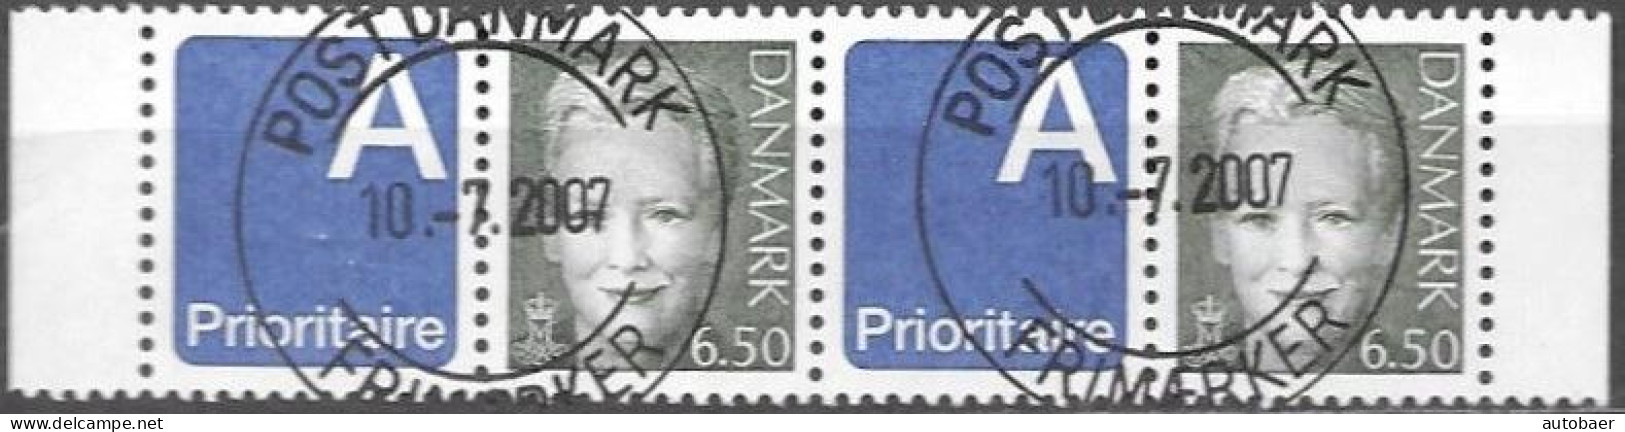 Denmark Danmark Dänemark 2003 Margrethe Prioritaire Michel Nr. 1297 Zf Stripe Of 2 Cancelled Oblitere Gestempelt Used Oo - Usado